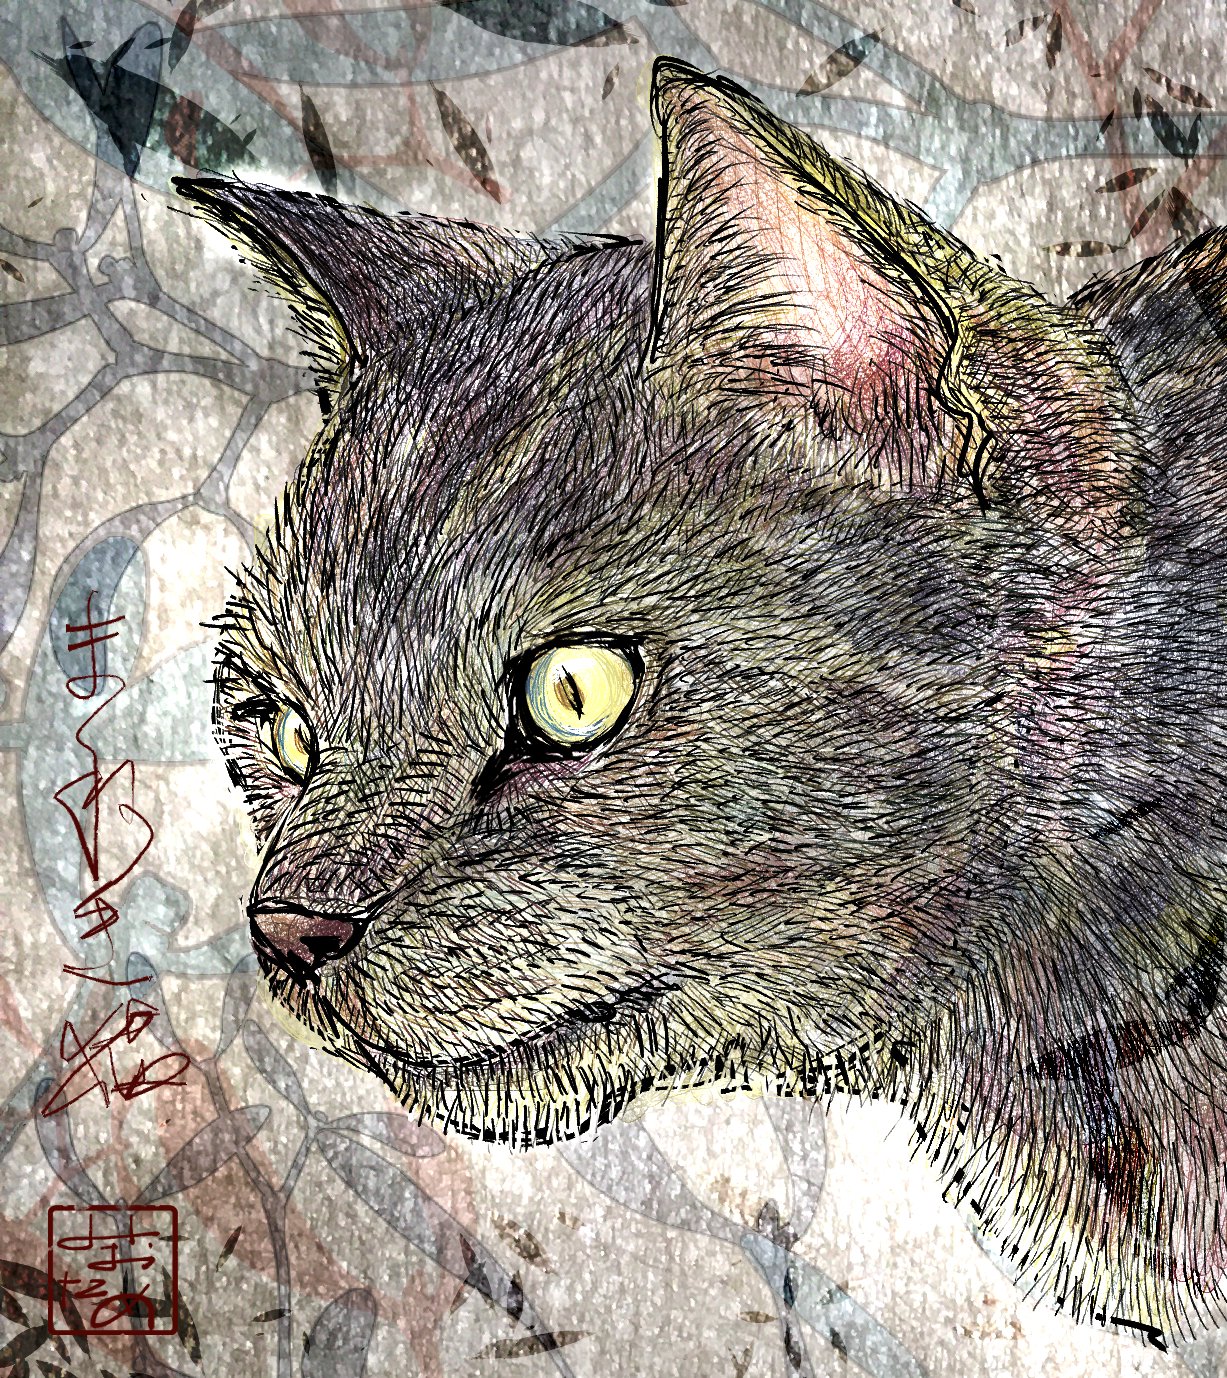 Miotame 猫のイラスト描きました 猫 ネコ ねこ イラスト Art Design Drawing Illustration Painting Cat 猫好き 猫好きさんと繋がりがりたい 猫のいるくらし 猫のイラスト 猫可愛い イラスト好きな人と繋がりたい T Co 3twltngxha